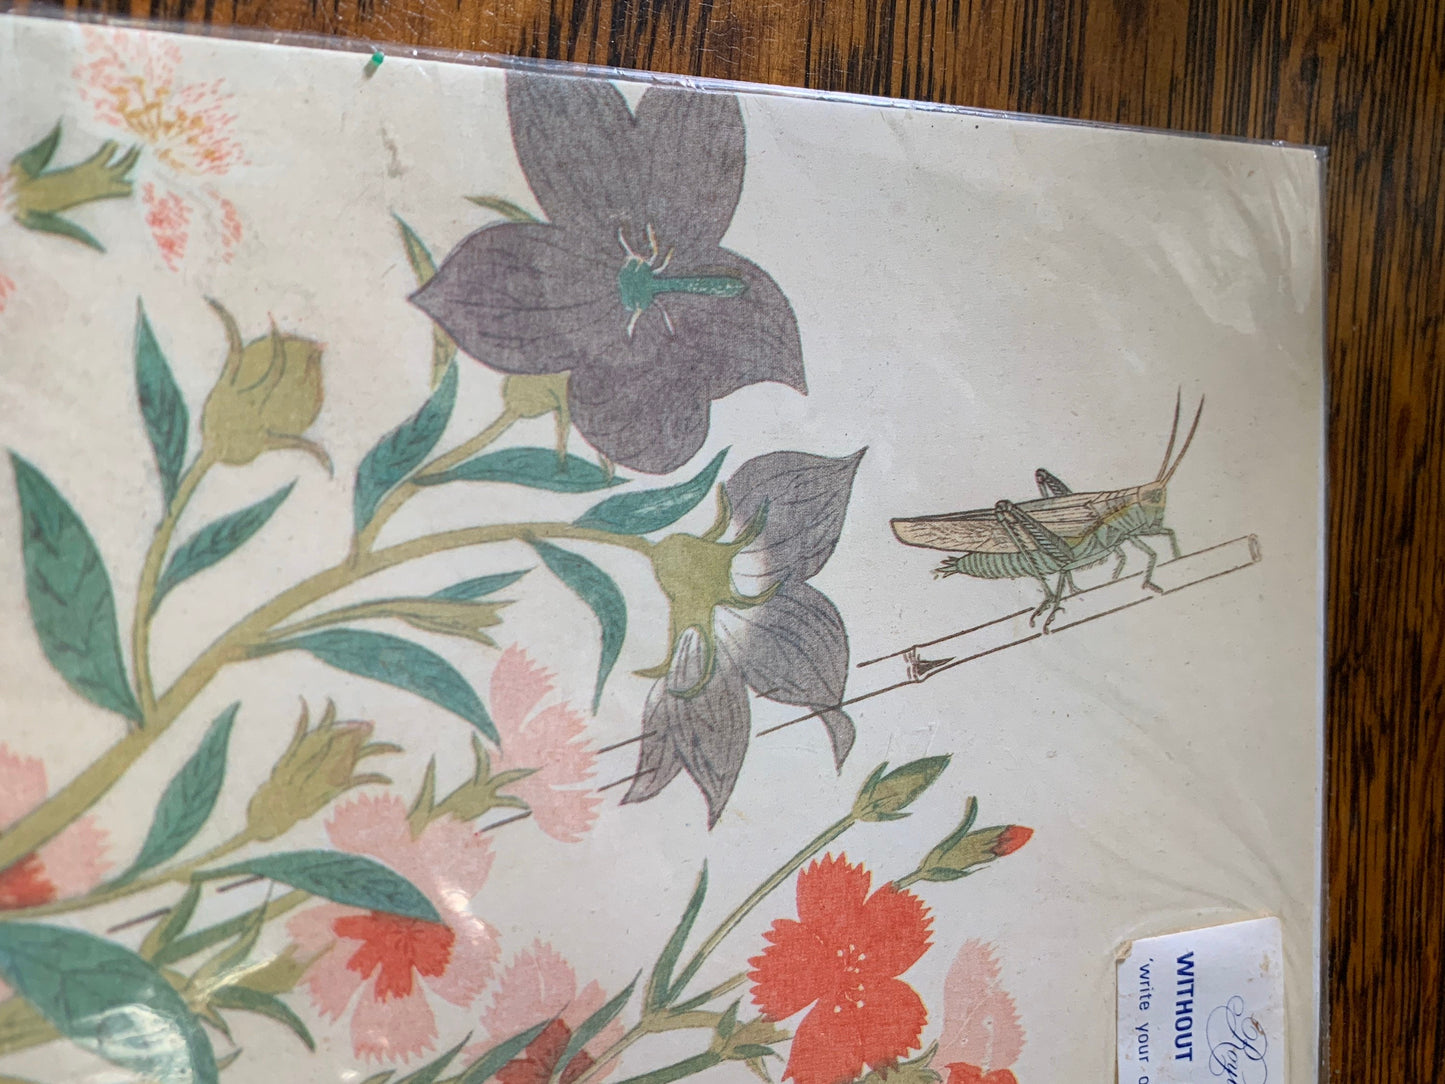 Vintage Greeting Card British Museum Gift Shop Card Balloon Flower, Platycodon, Ehon Mushi Erabi Kitawaga Utamaro